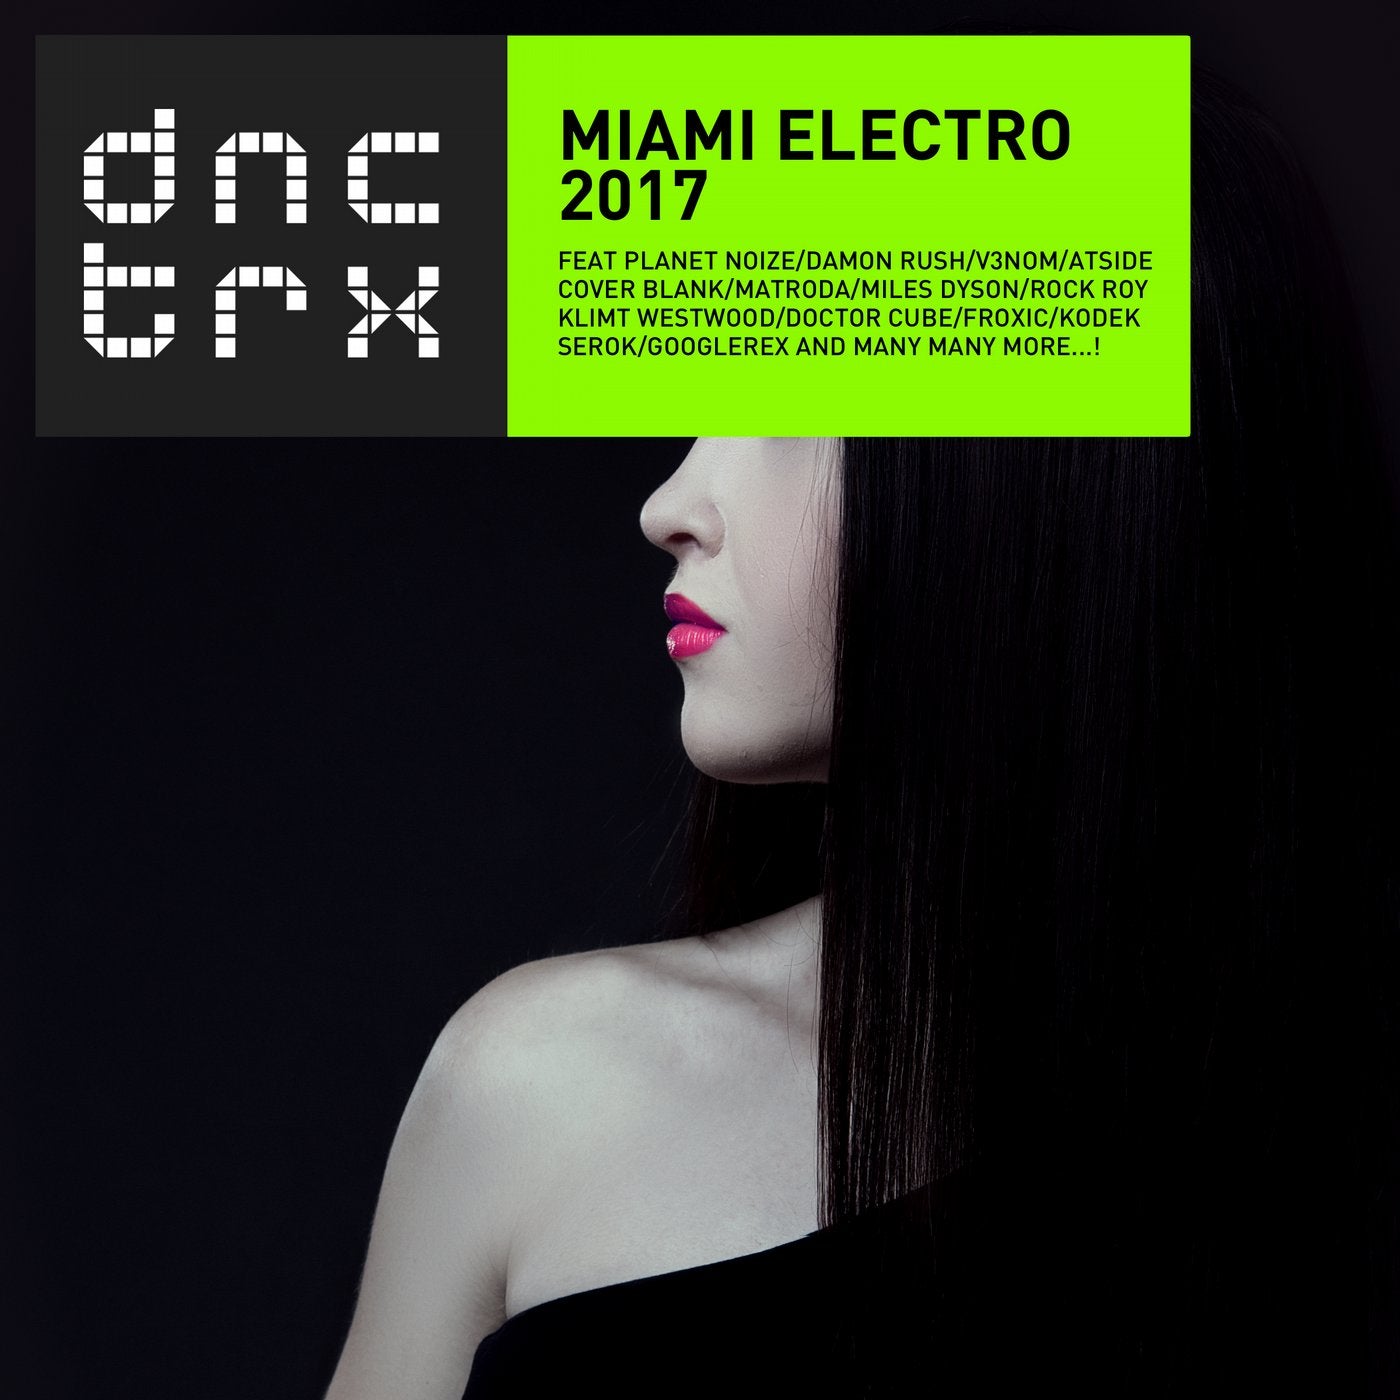 Miami Electro 2017